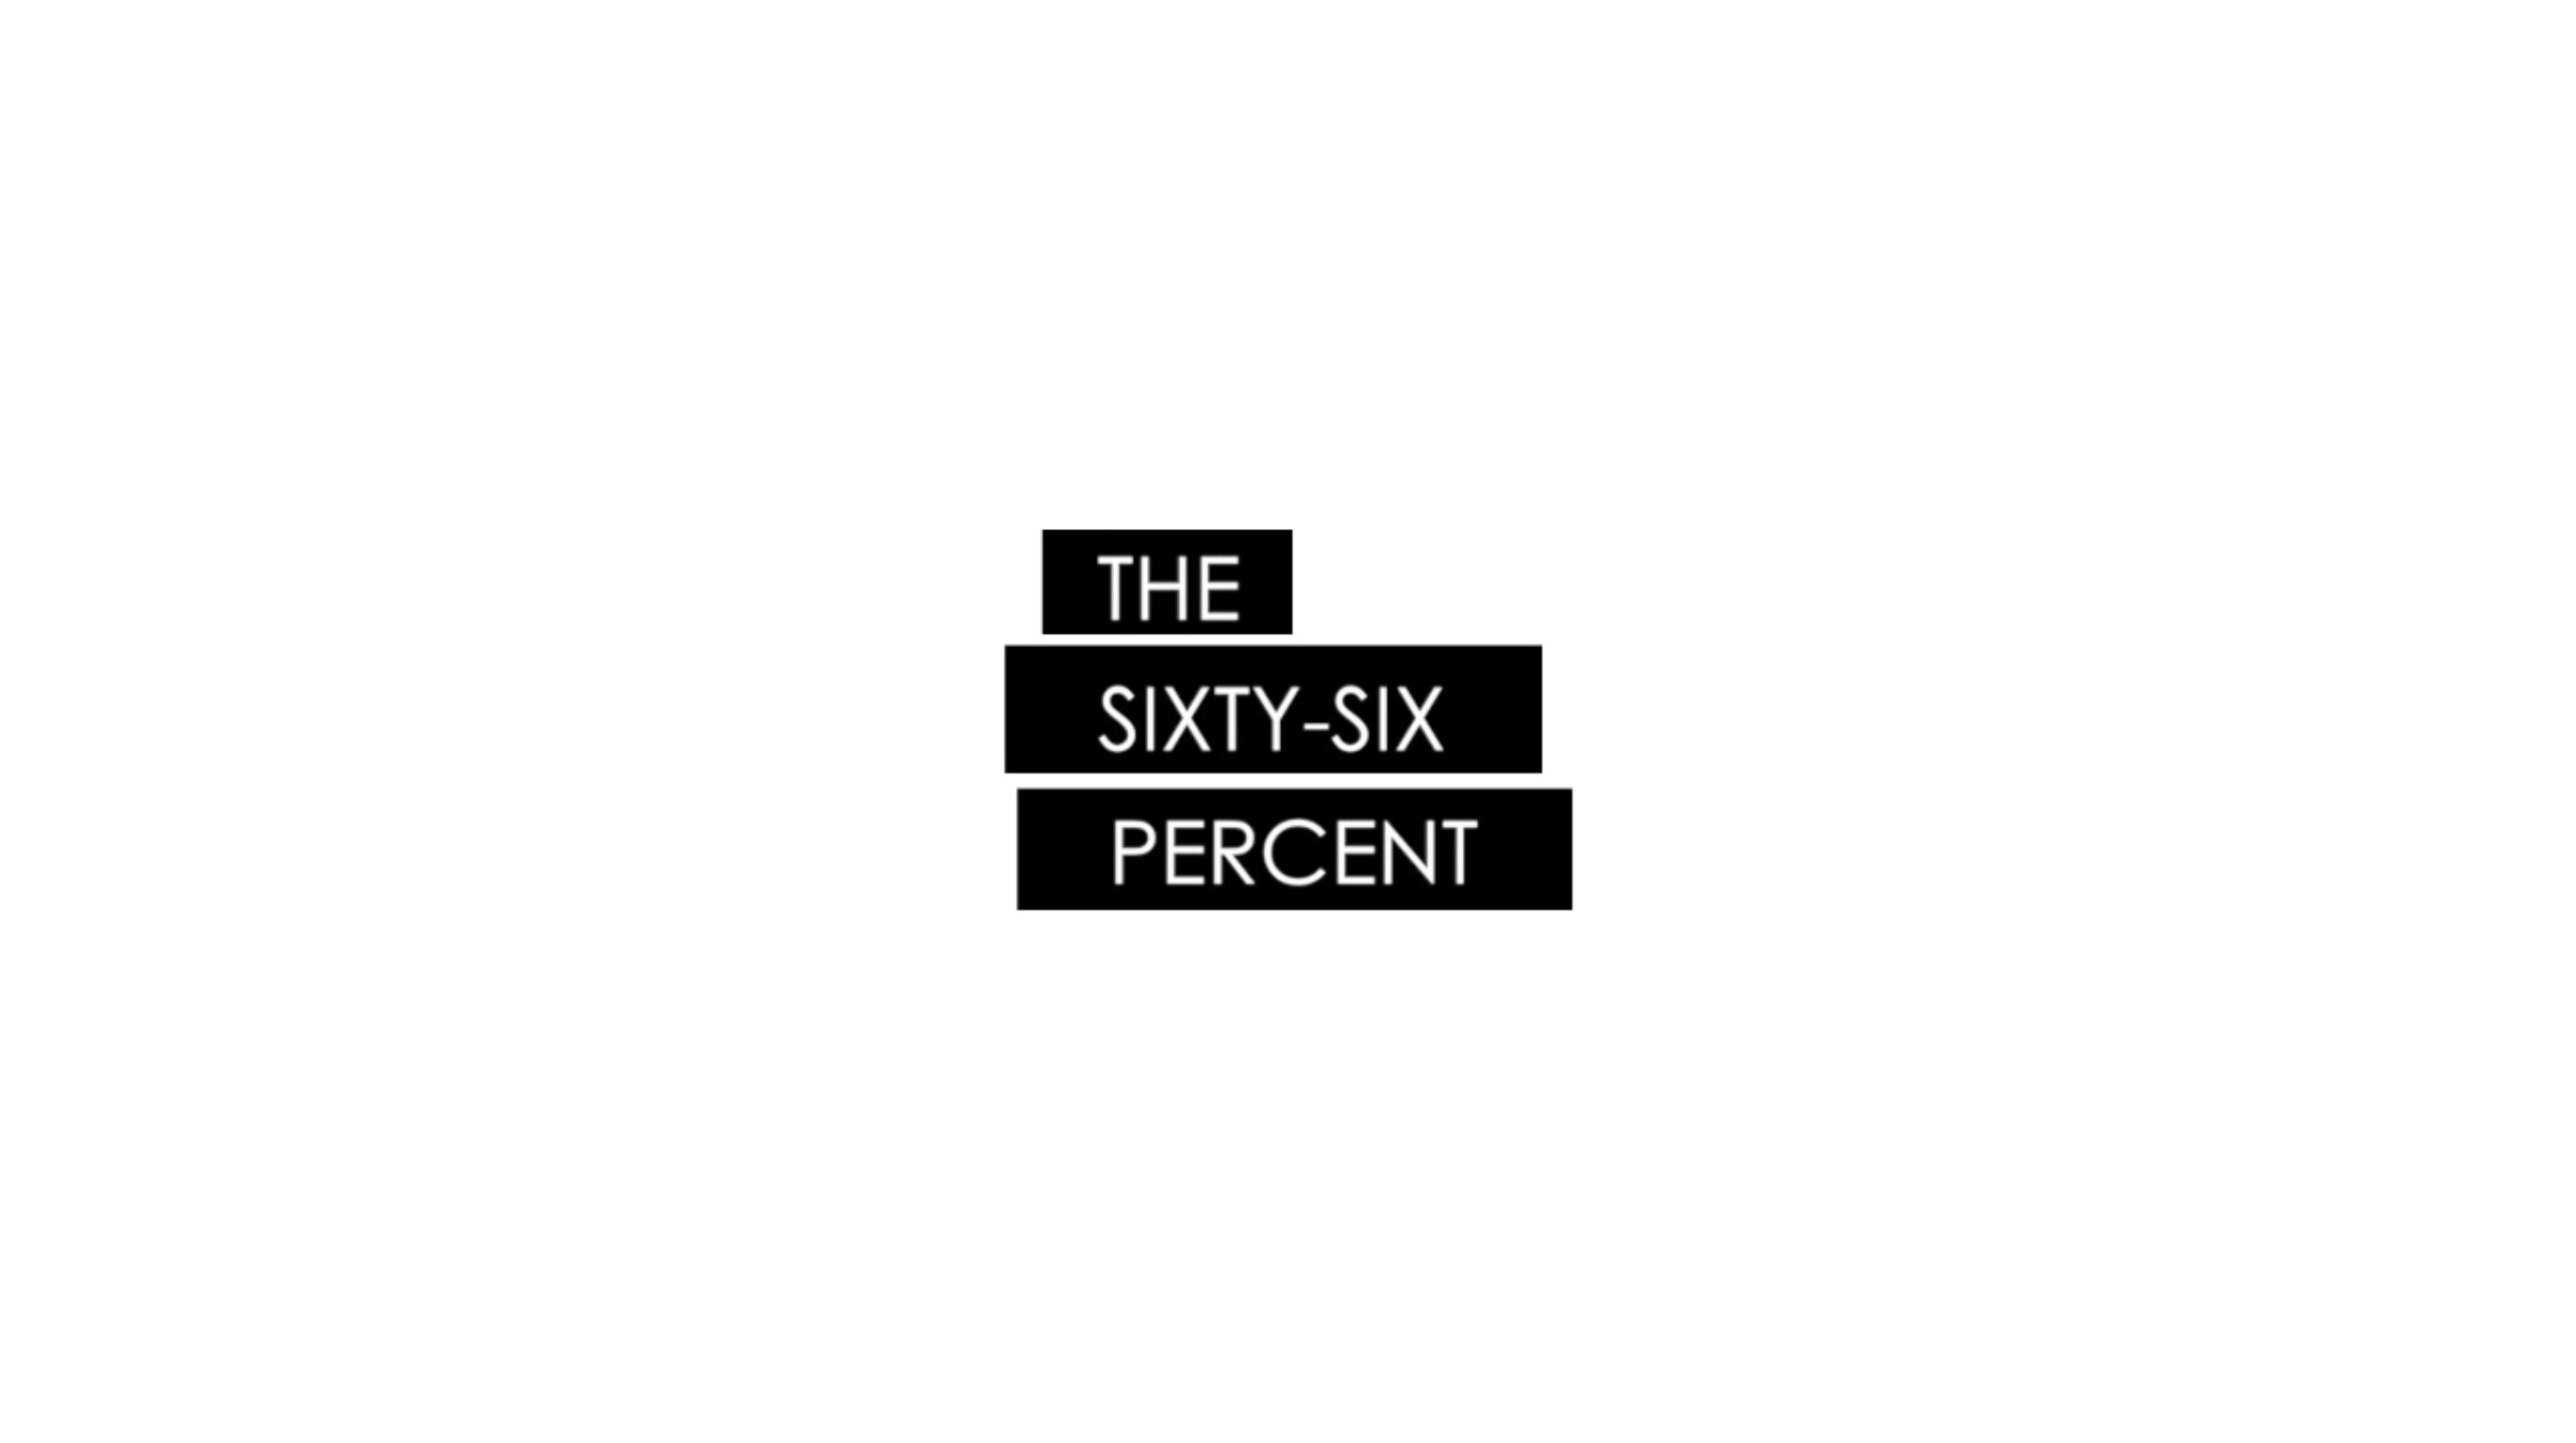 The Sixty-Six Percent